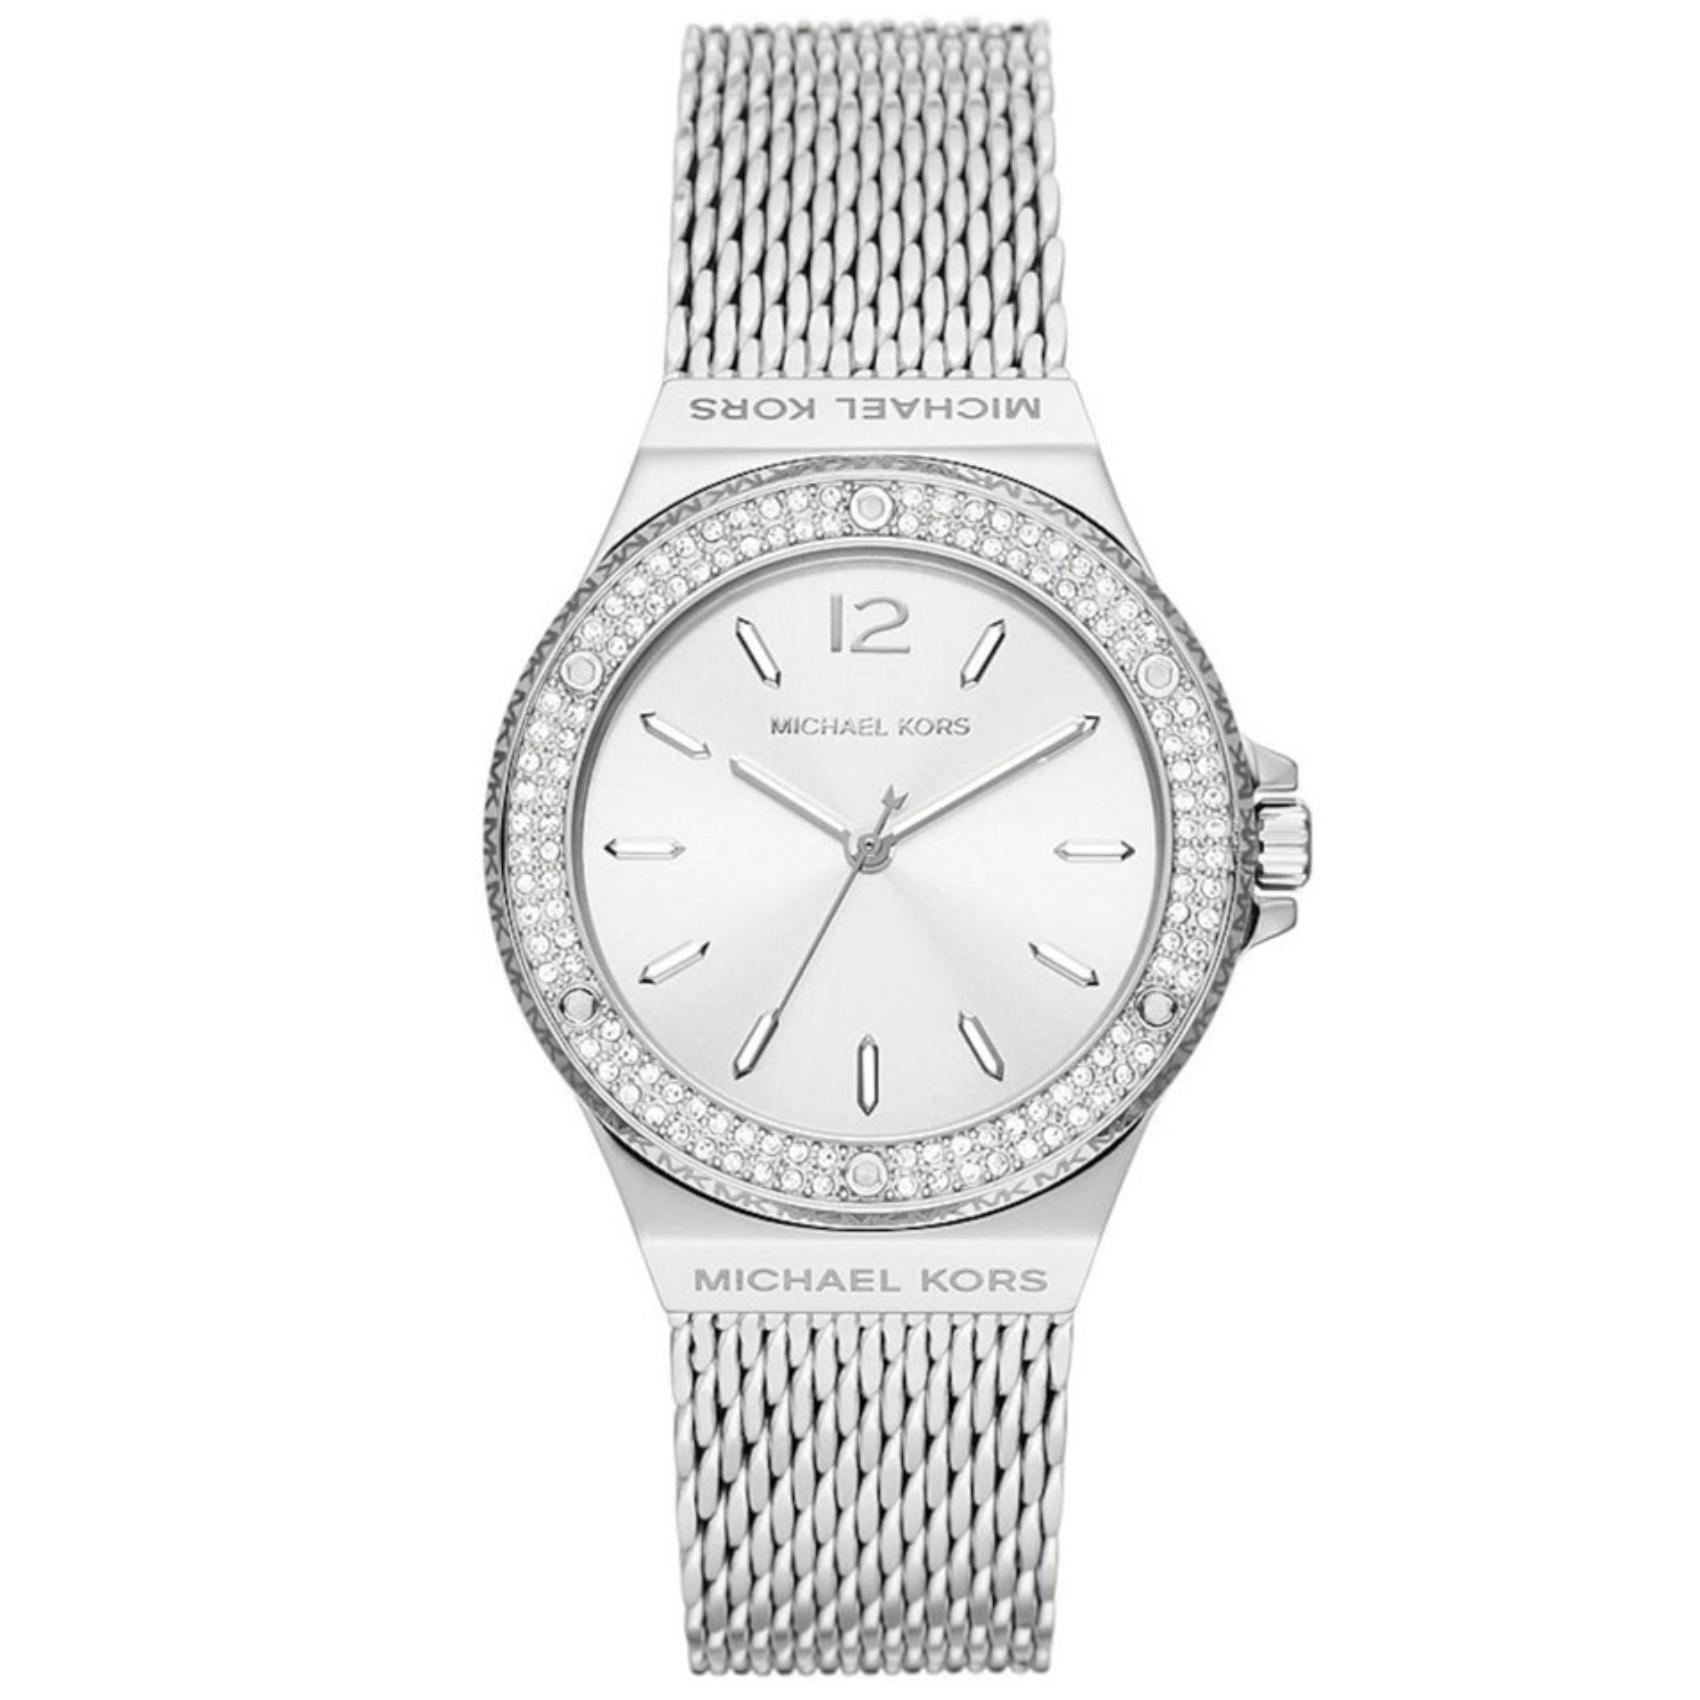 Γυναικείο ρολόι Michael Kors Lennox MK7337 με ασημί ατσάλινο μπρασελέ, ασημί καντράν και στρογγυλό στεφάνι 37mm με ζιργκόν.